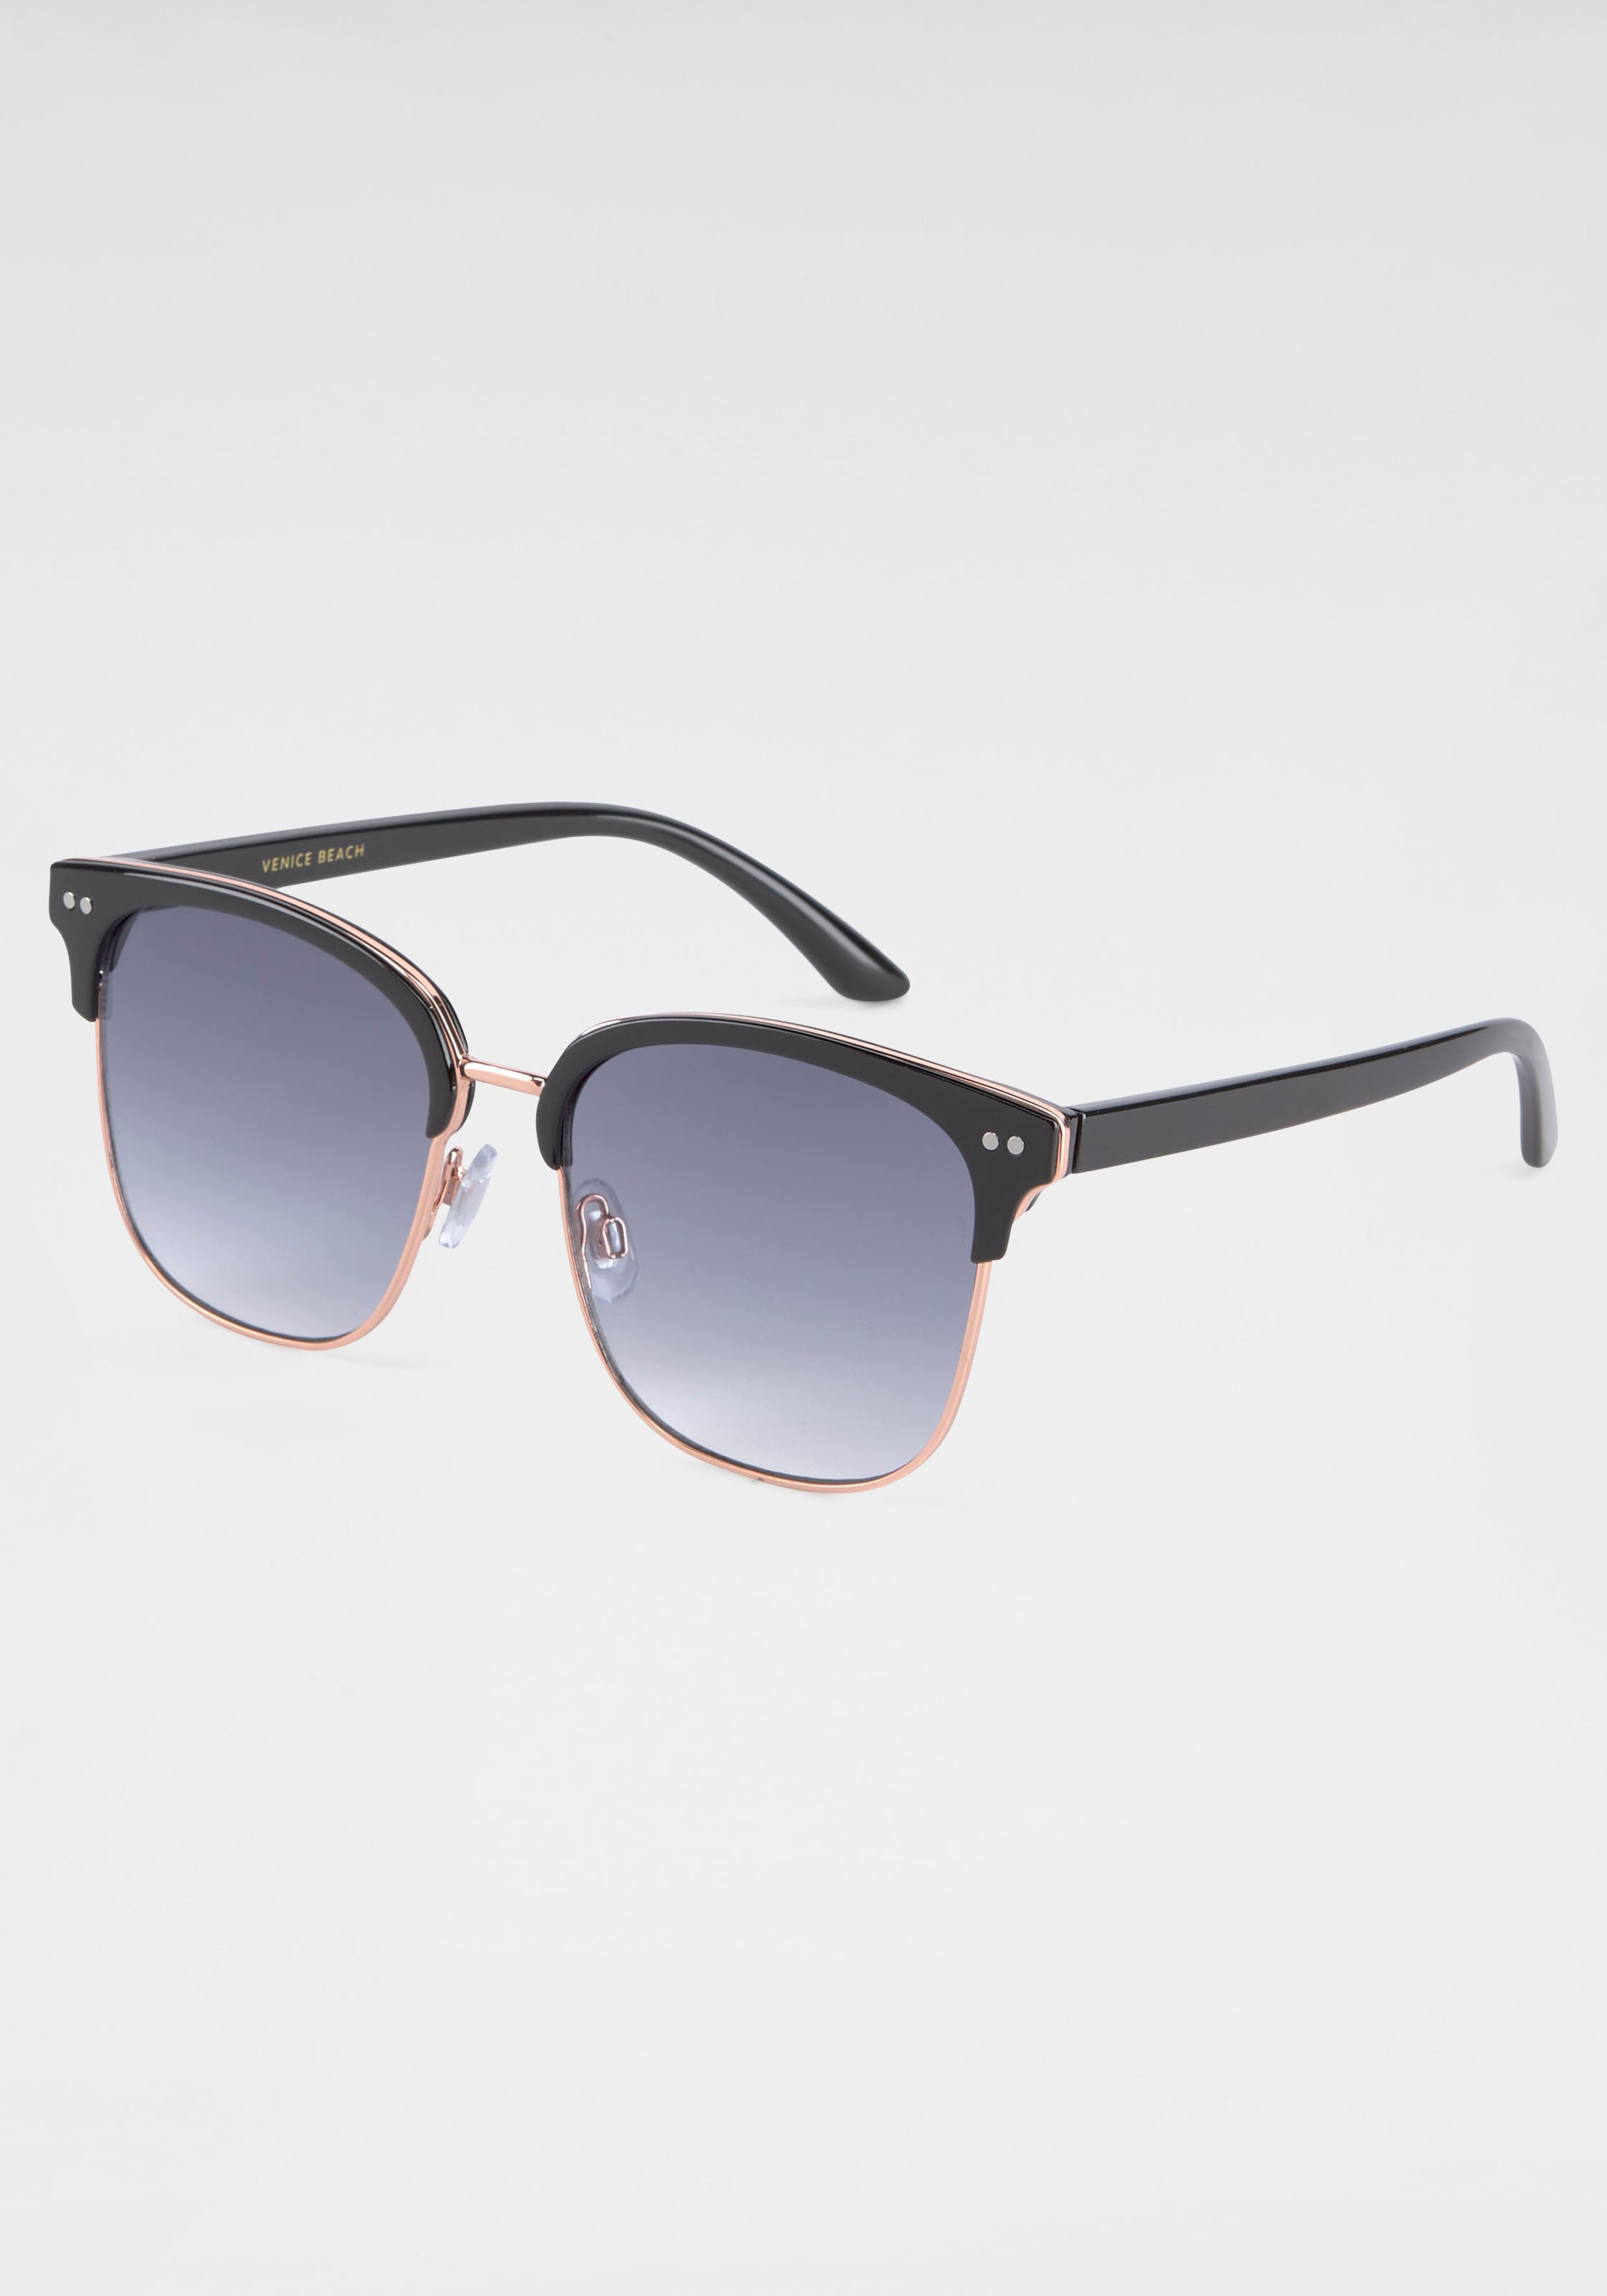 ♕ BACK bestellen Gläsern IN Sonnenbrille, gebogenen versandkostenfrei Eyewear BLACK mit